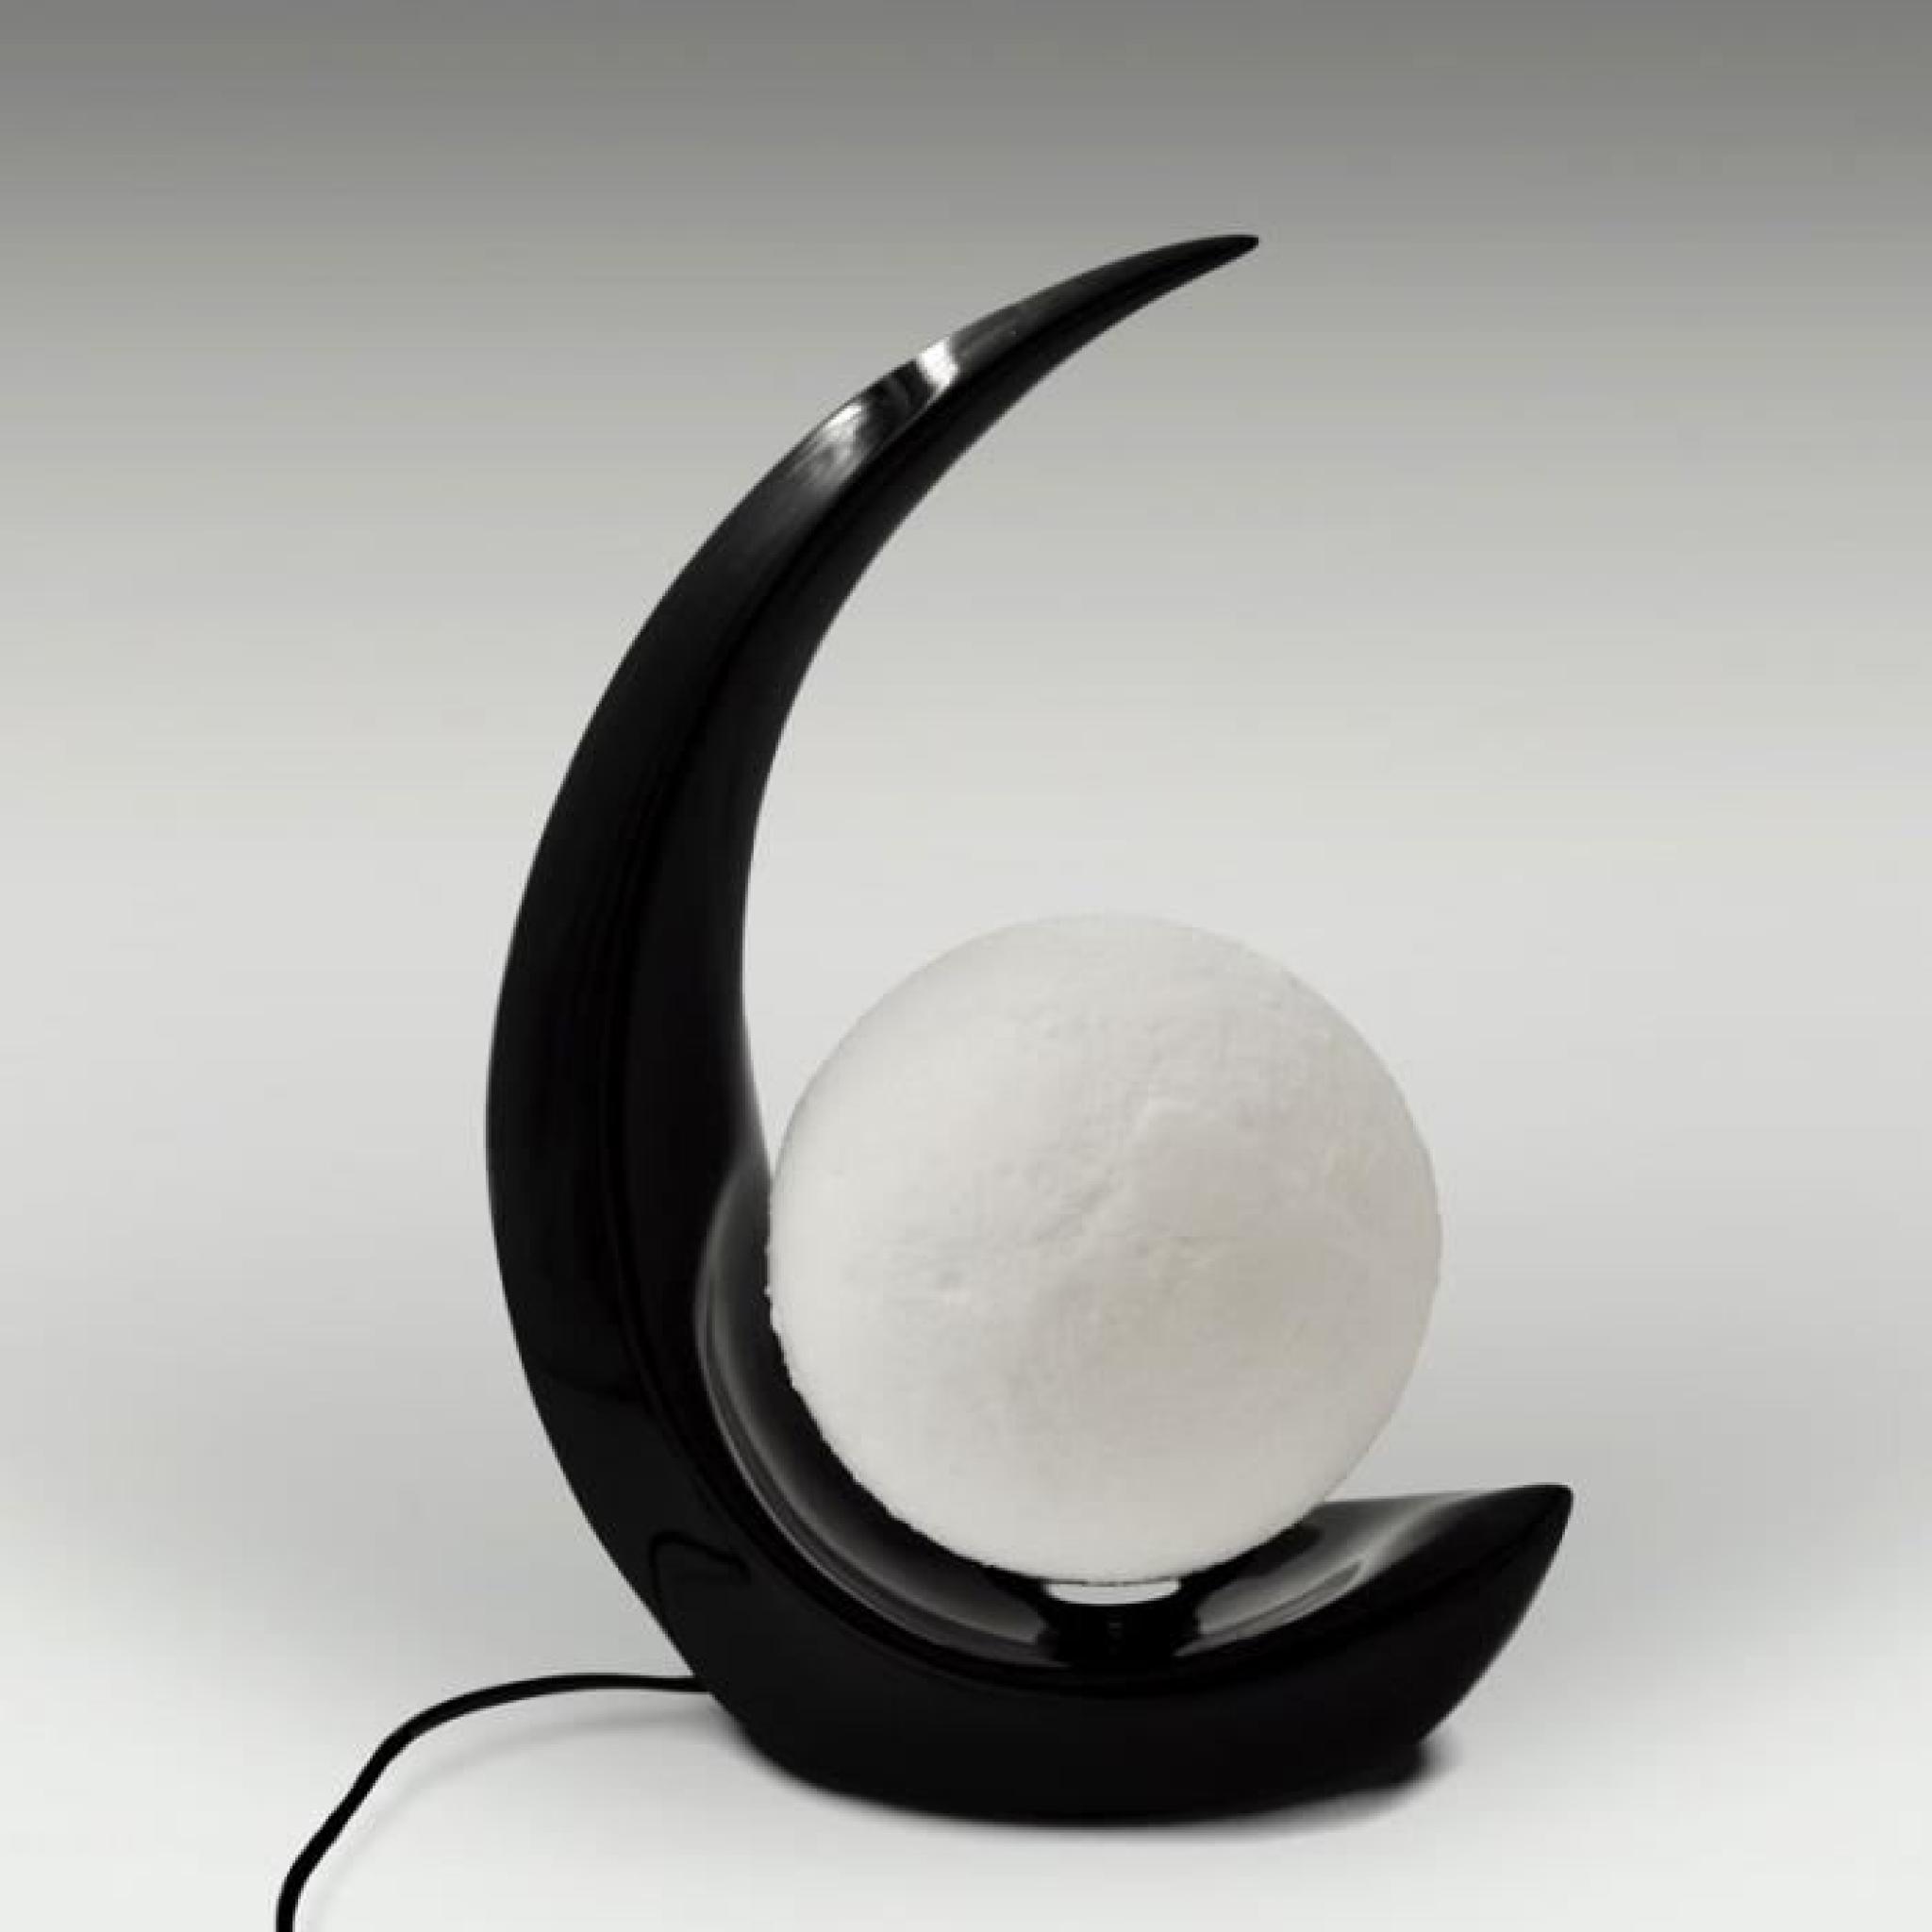 3D print TABLE LIGHT Lampe lunaire de création 3D de lampe d'une lampe à del de personnalisation pas cher